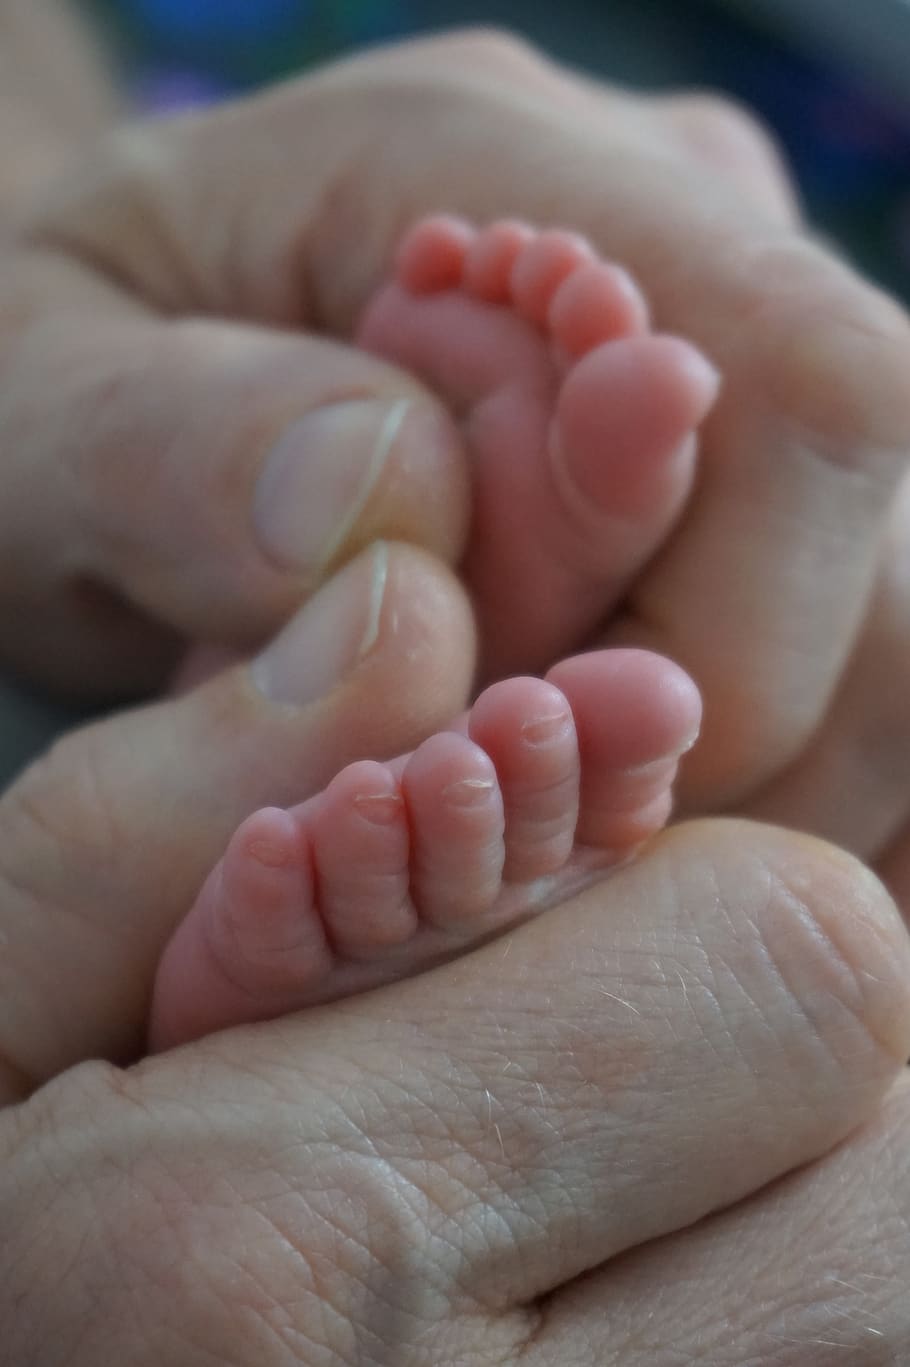 ramah, bayi, kaki bayi, bayi baru lahir, jari kaki, jari kaki bayi, ayah, tangan, bagian tubuh manusia, bagian tubuh